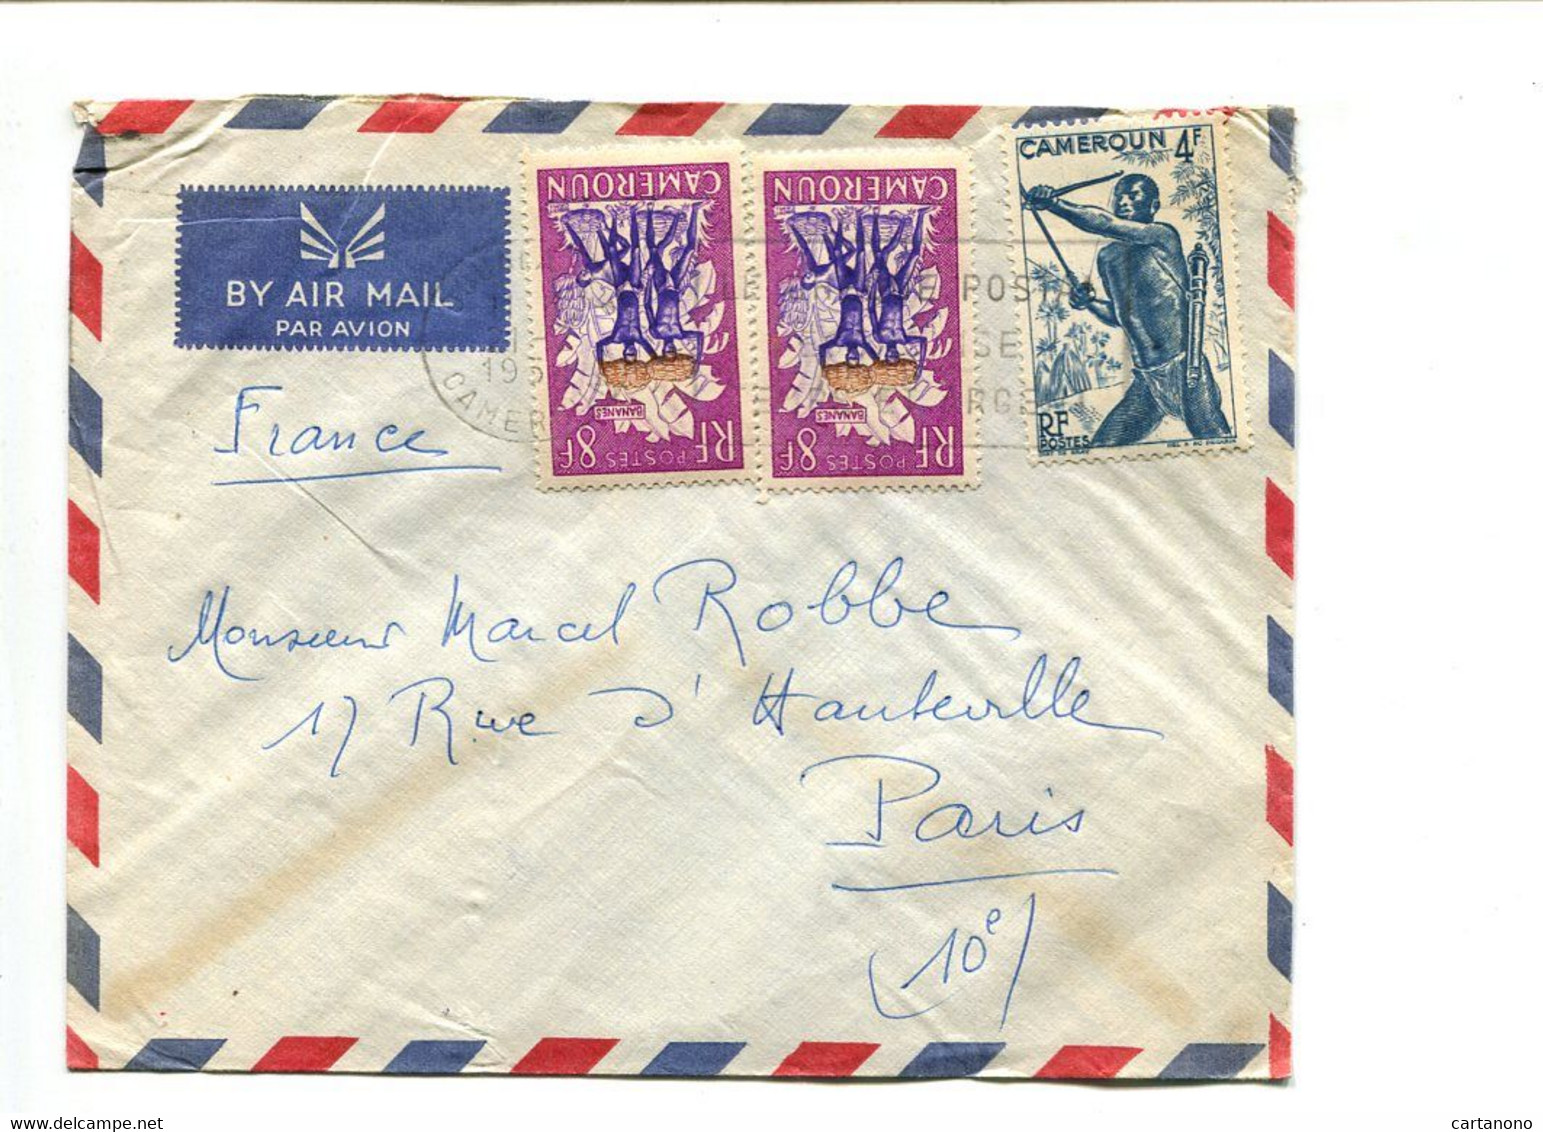 CAMEROUN 1958 - Affranchissement Sur Lettre Par Avion - Covers & Documents